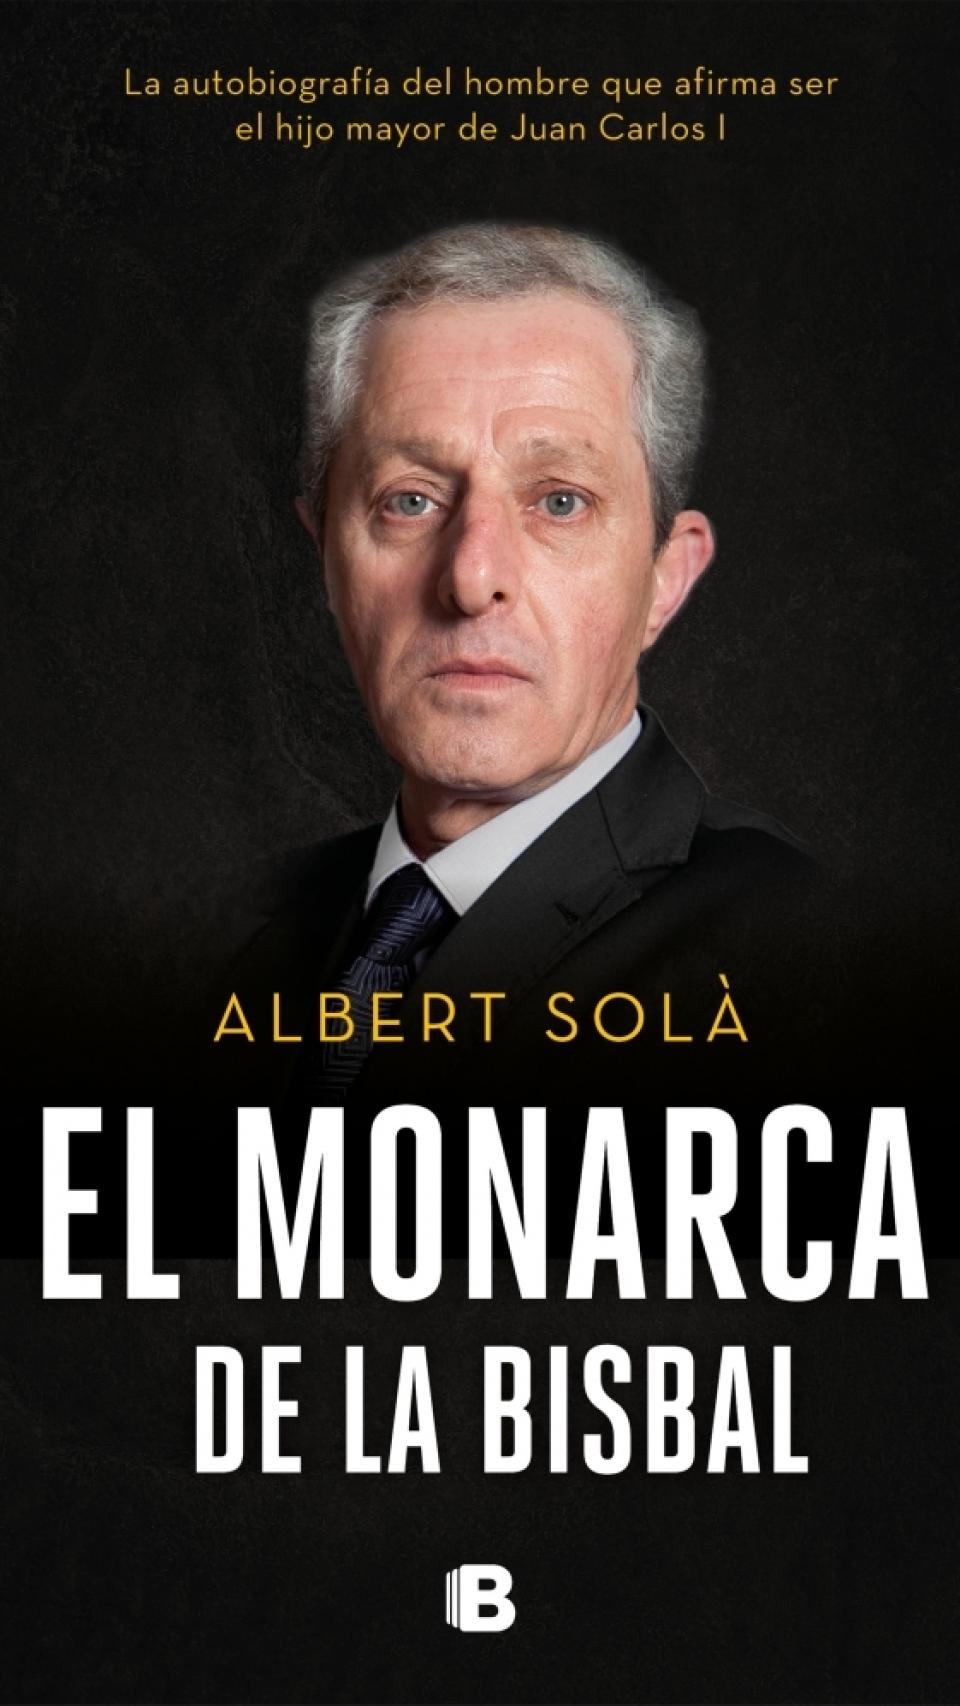 La portada del libro escrito por Albert Solà.